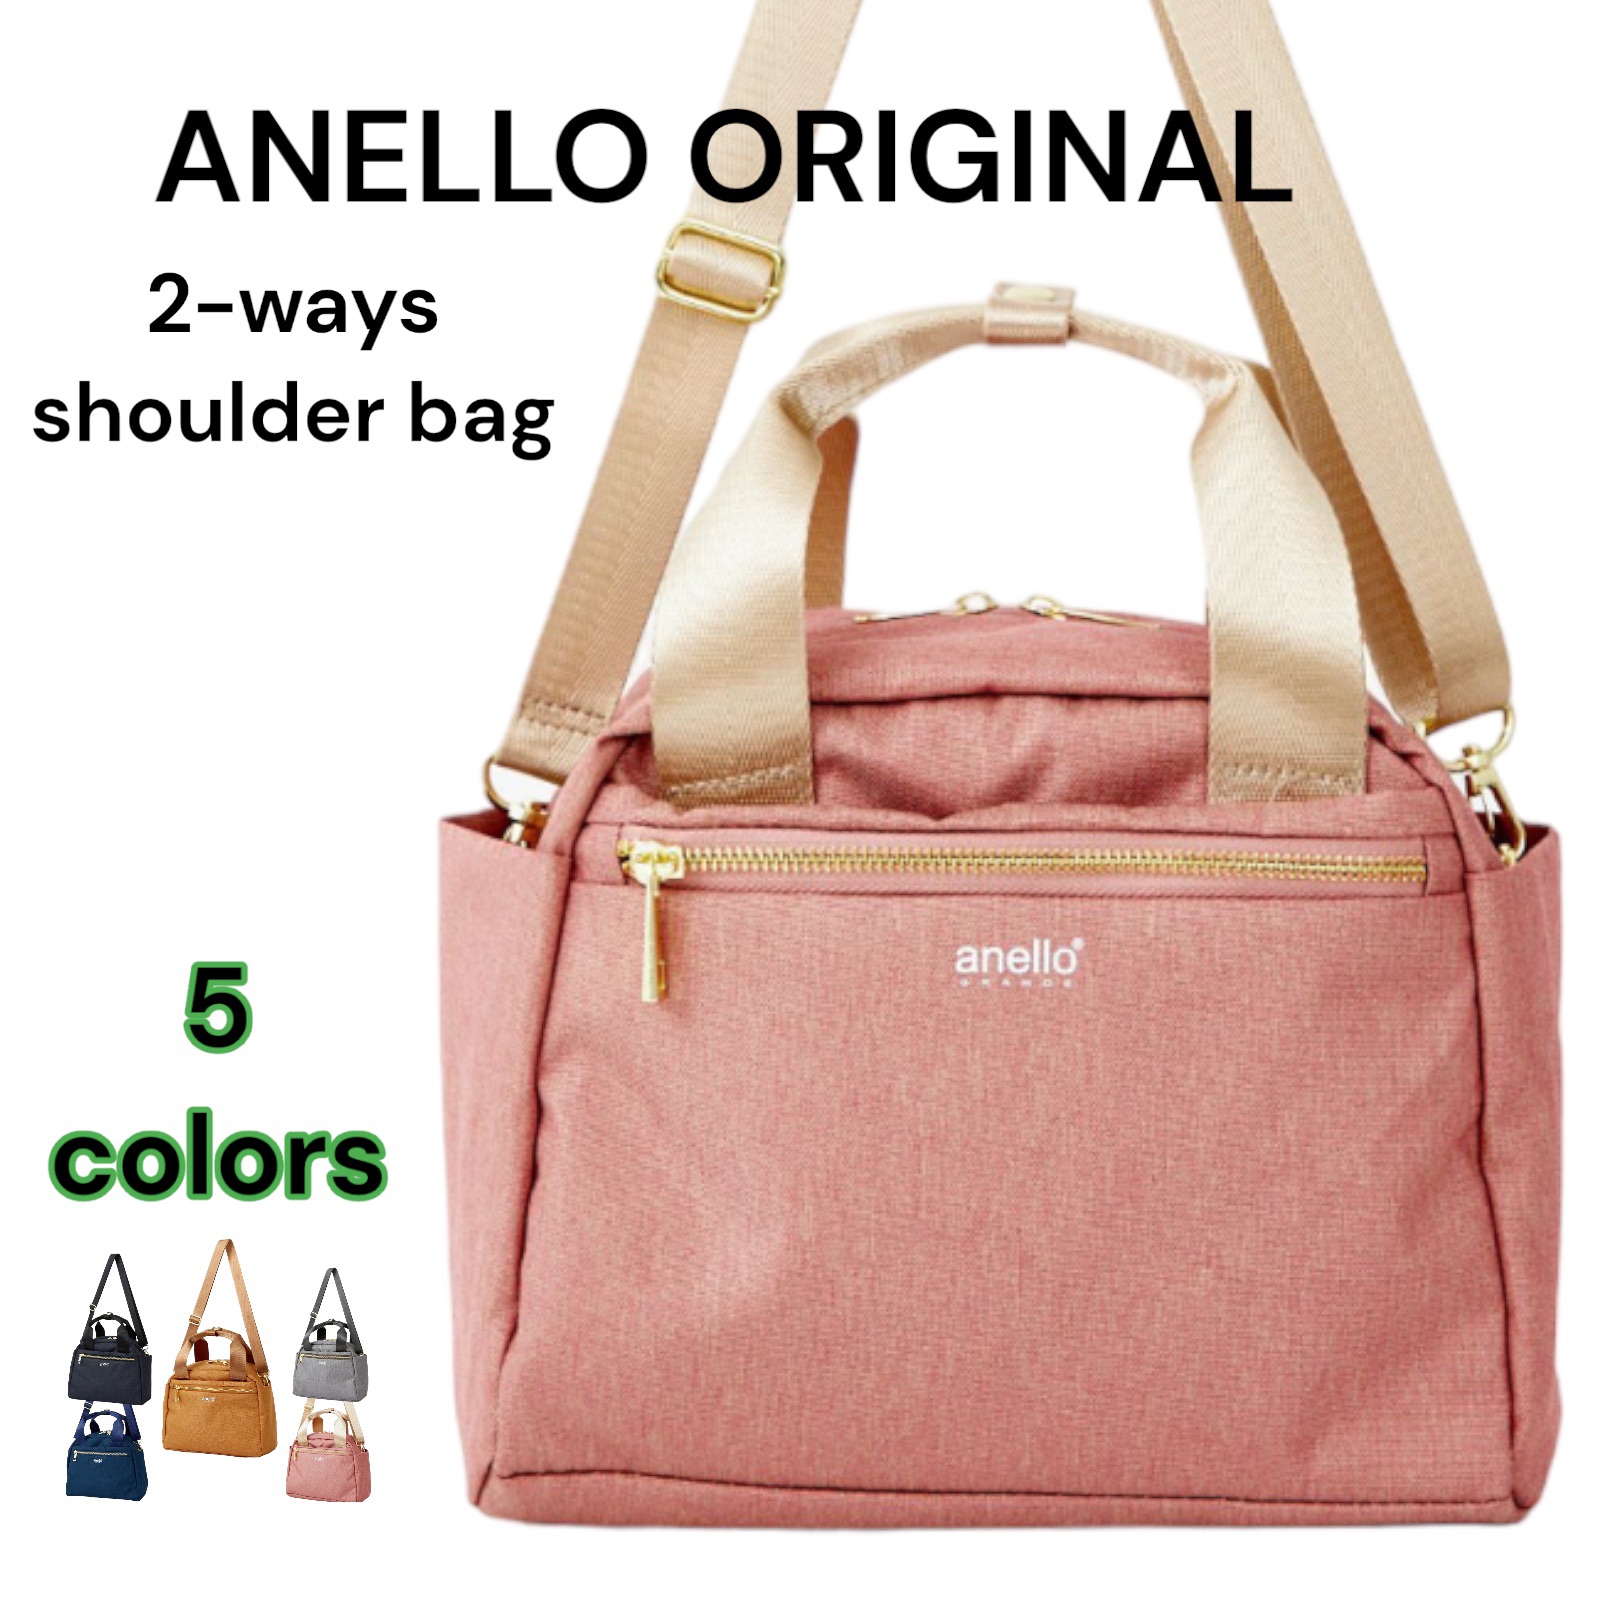 anello GRANDE(アネロ グランデ) Shoulder Bag, Biege: Handbags